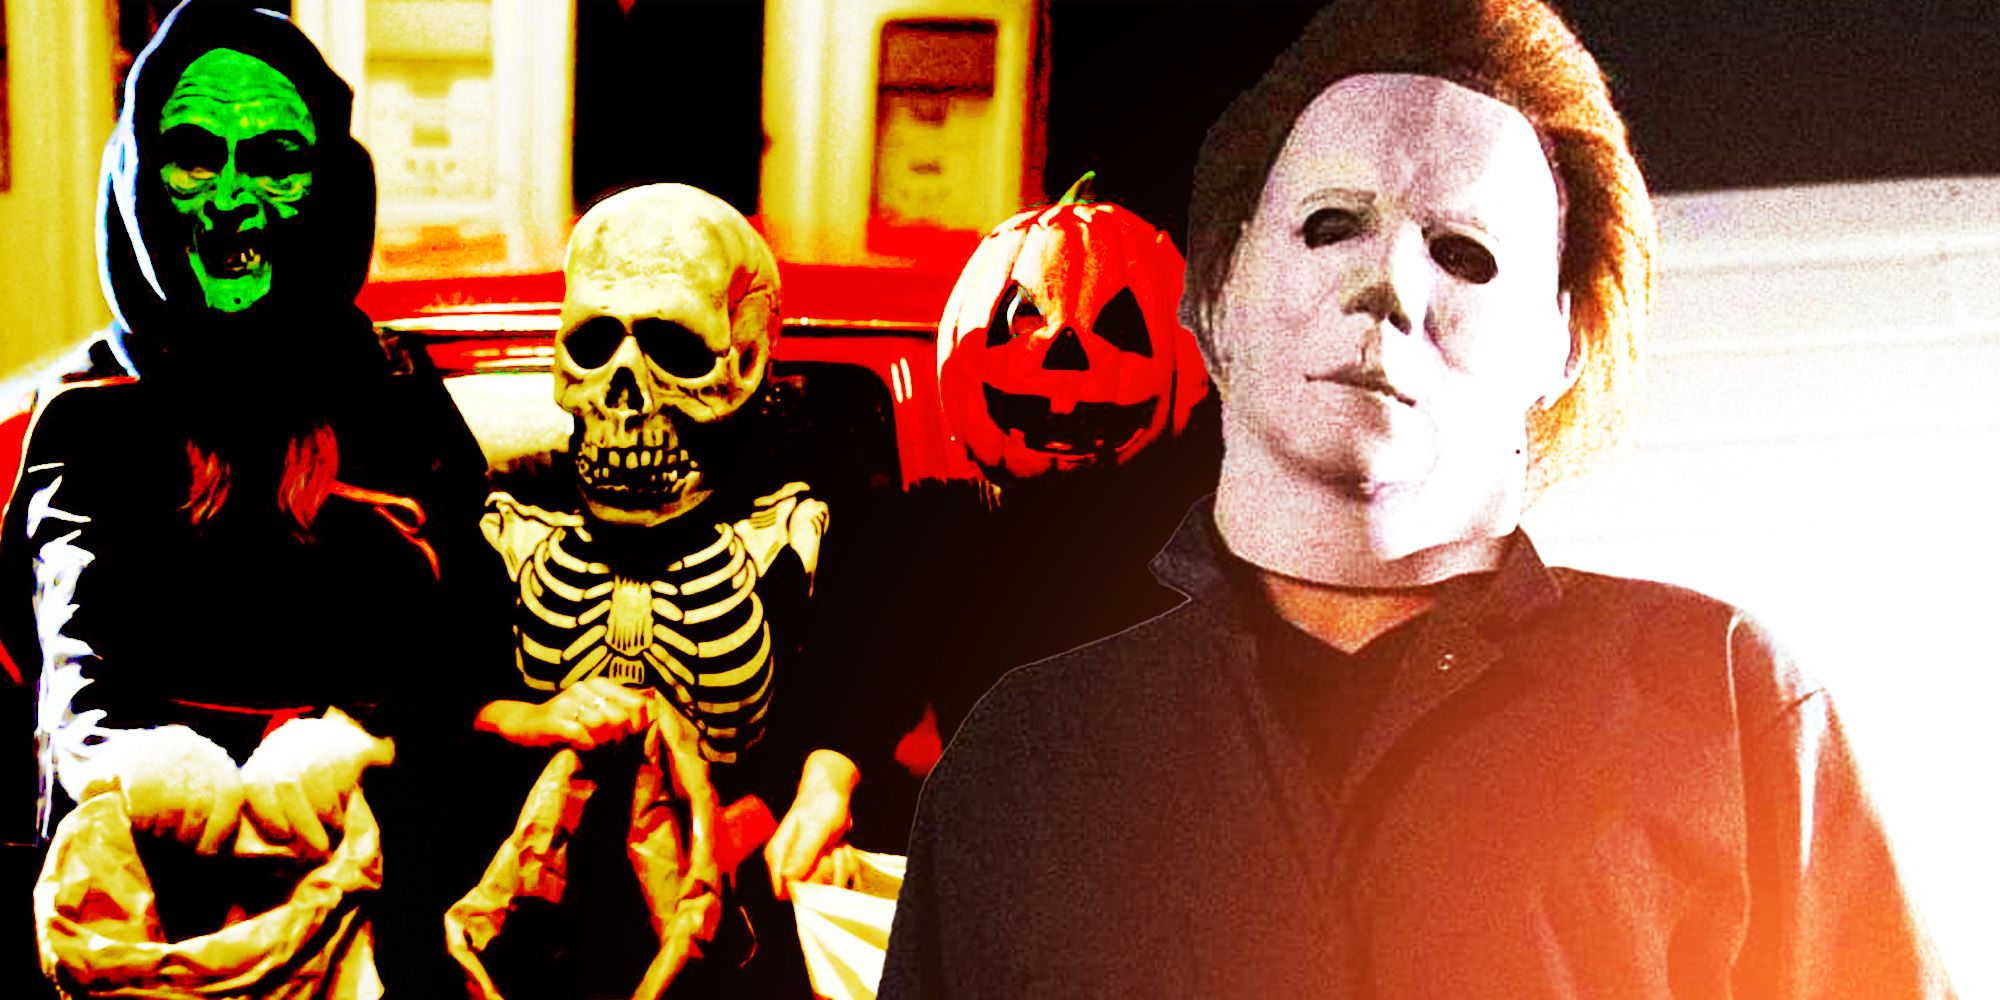 Halloween finalmente puede regresar al plan de franquicia original de John Carpenter después de 40 años y 5 reinicios